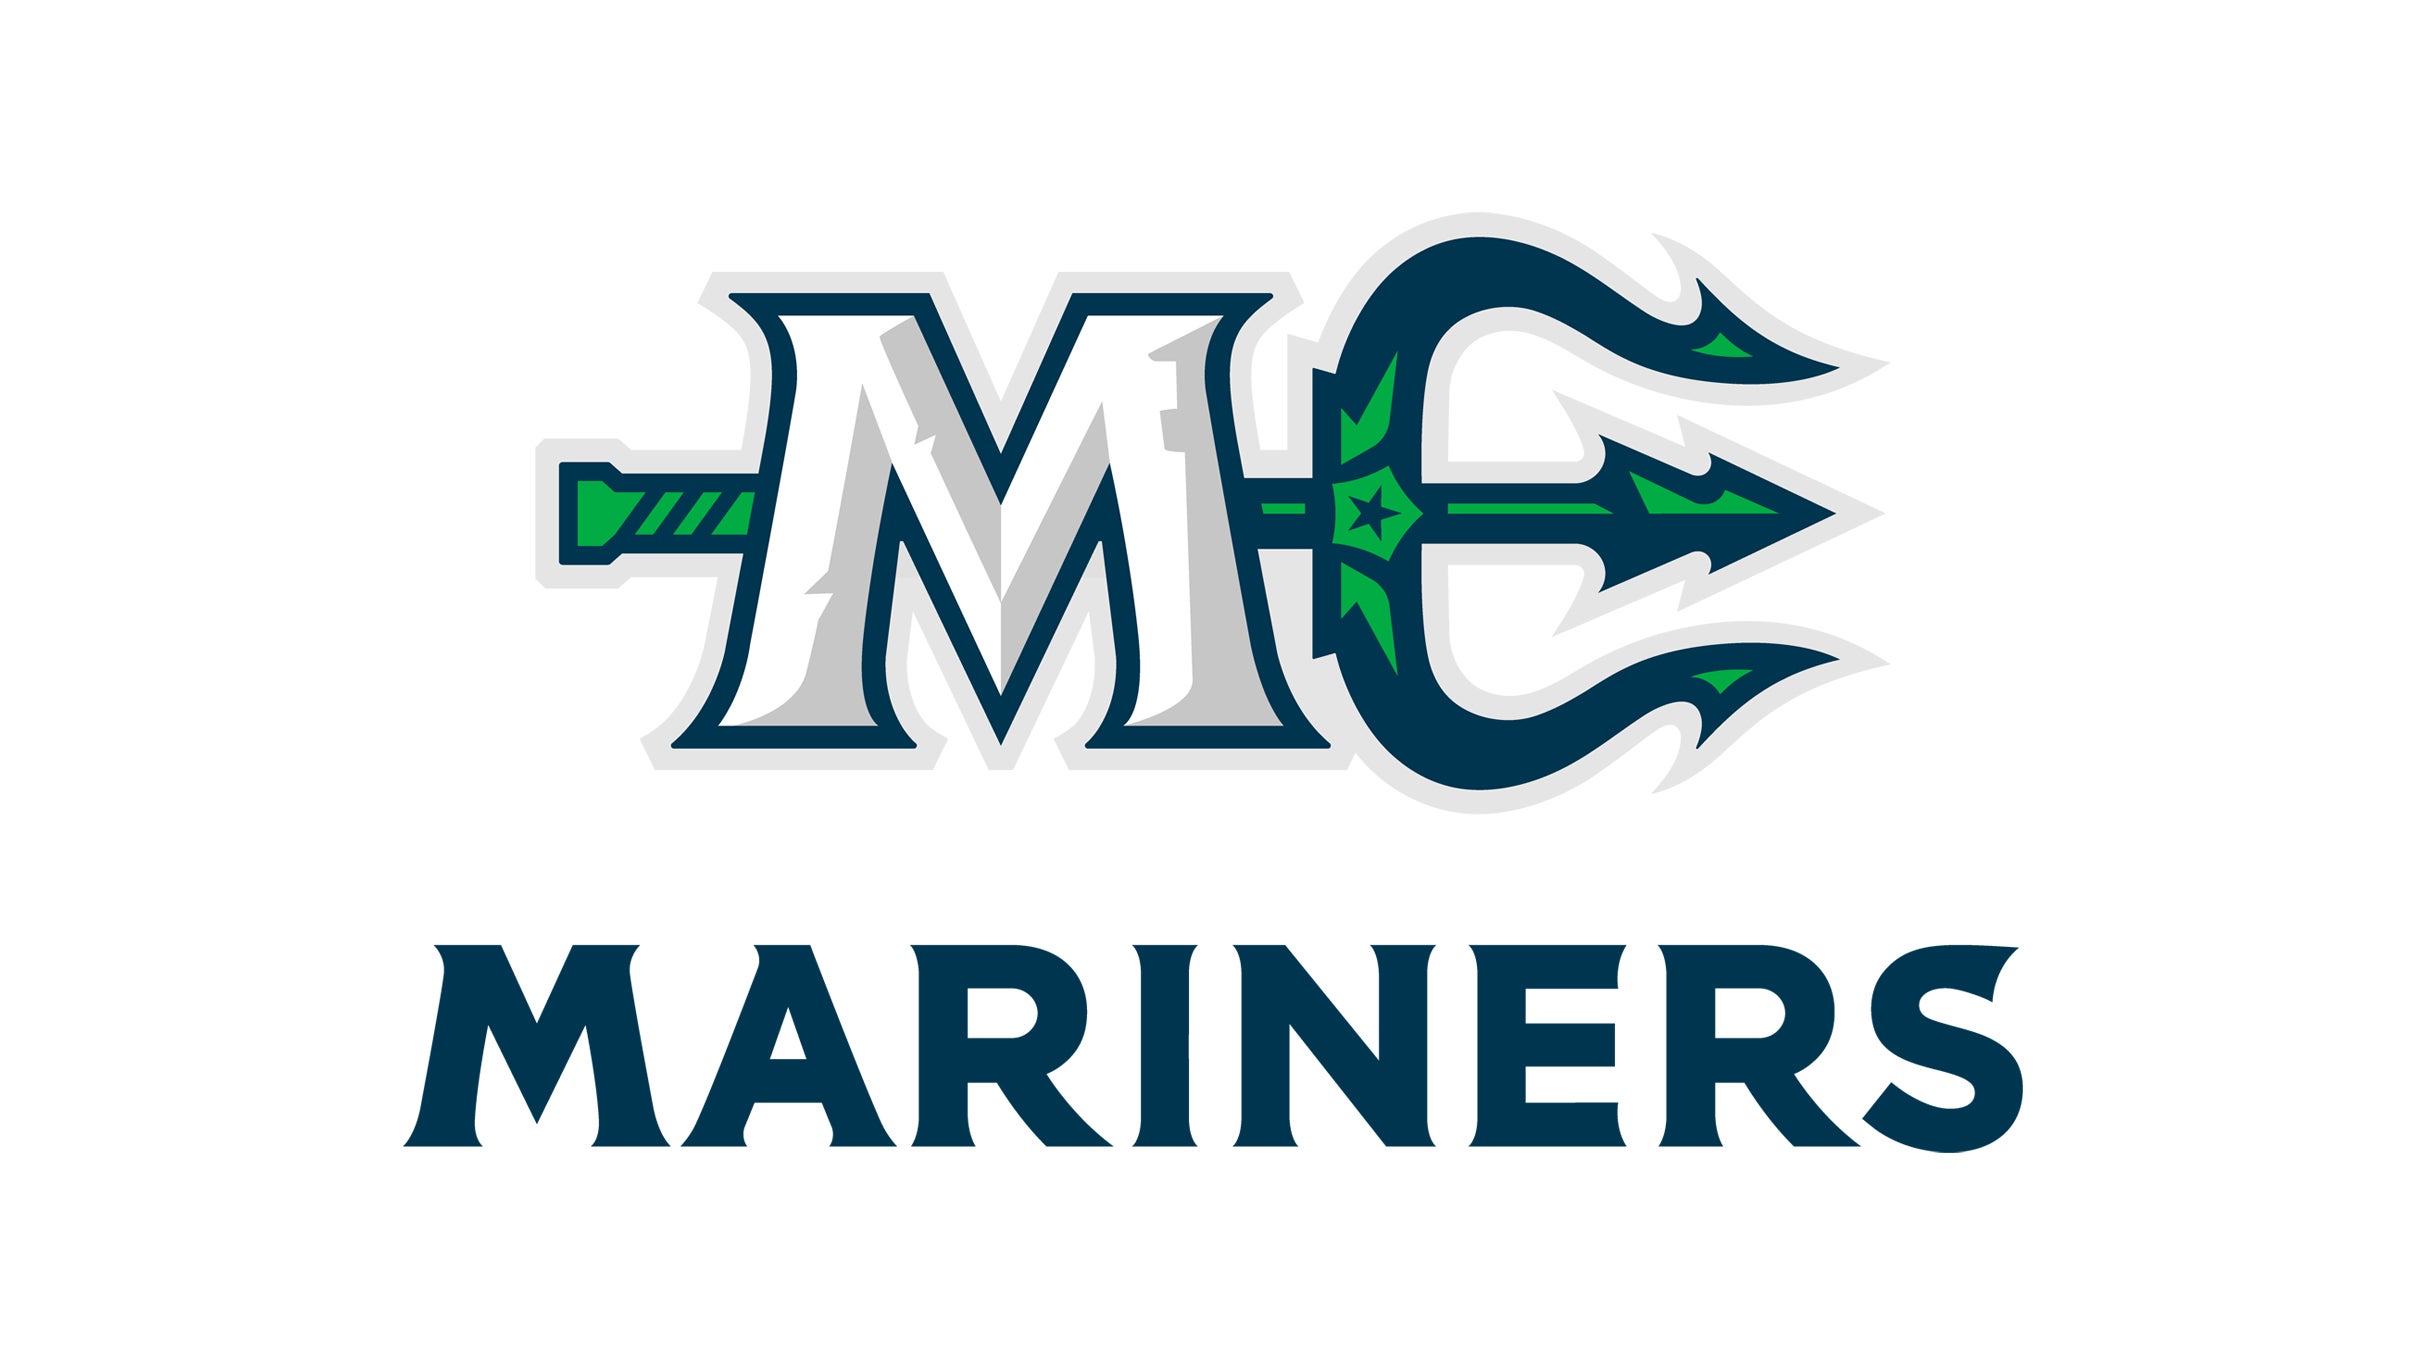 Maine Mariners Round 1 Game 3 at Cross Insurance Arena